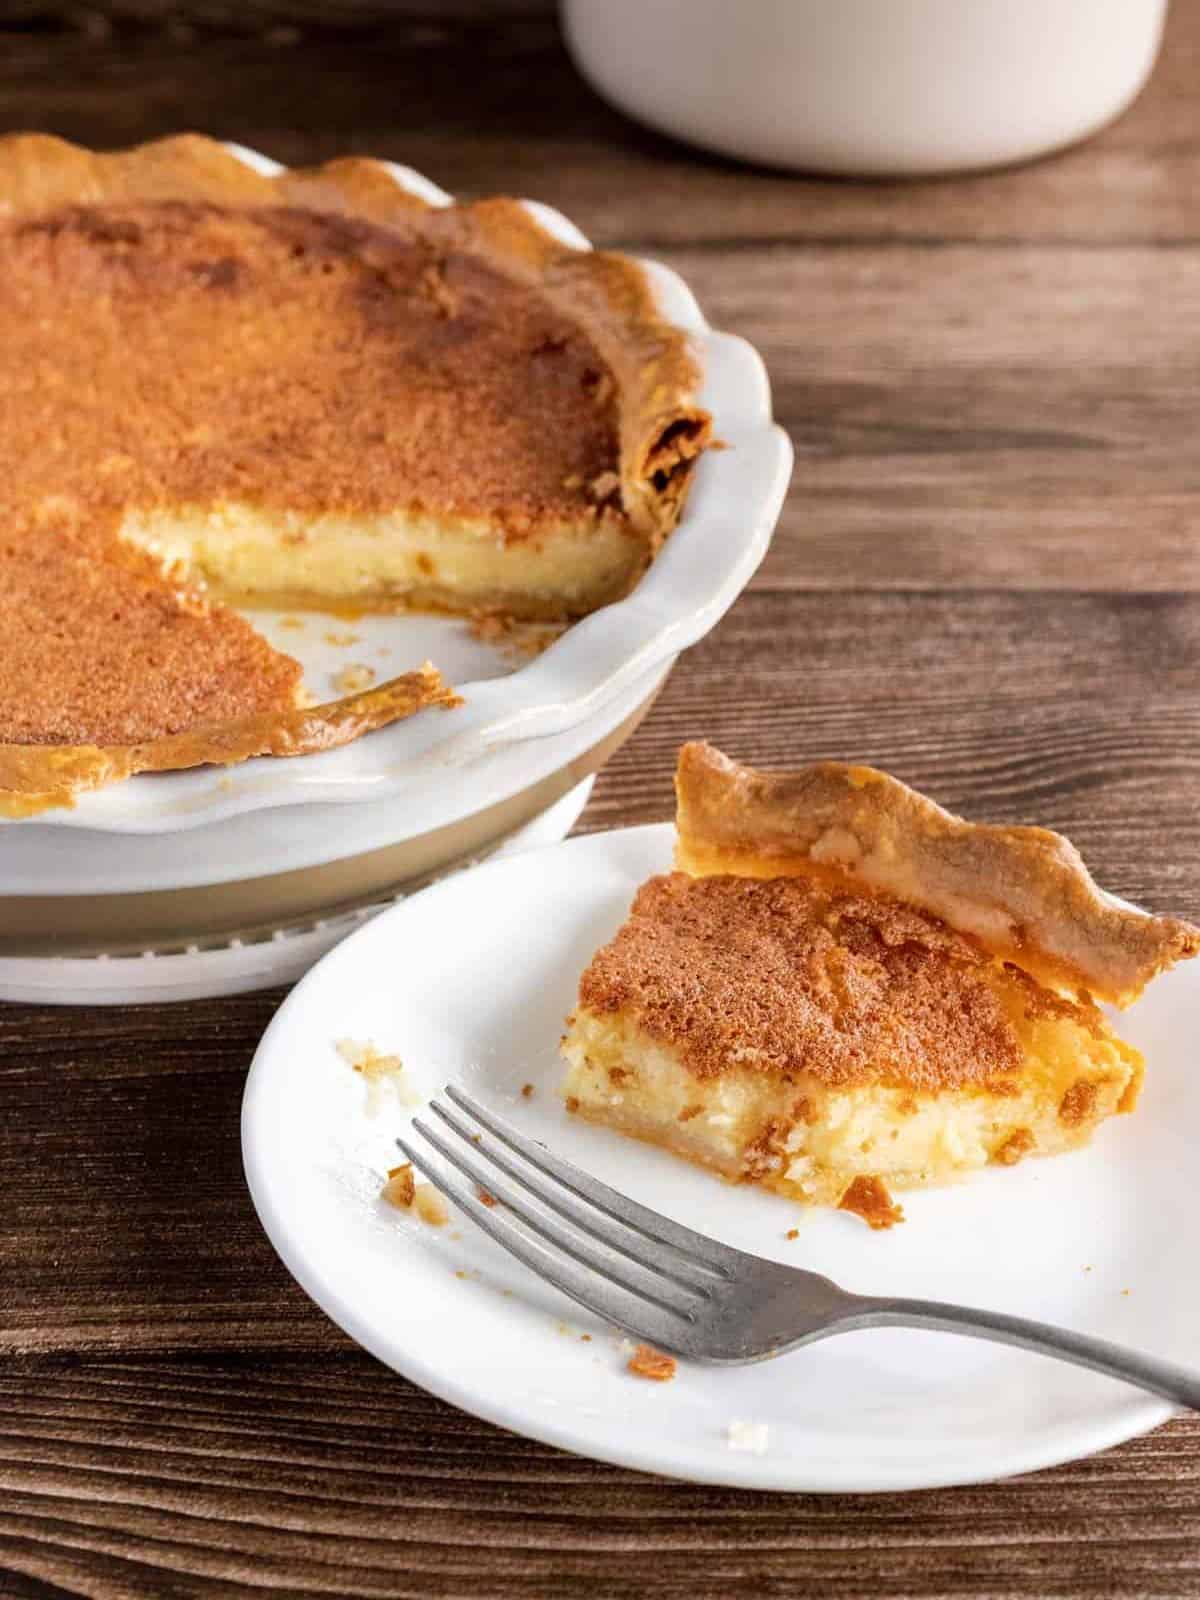 buttermilk pie with a golden brown crust.